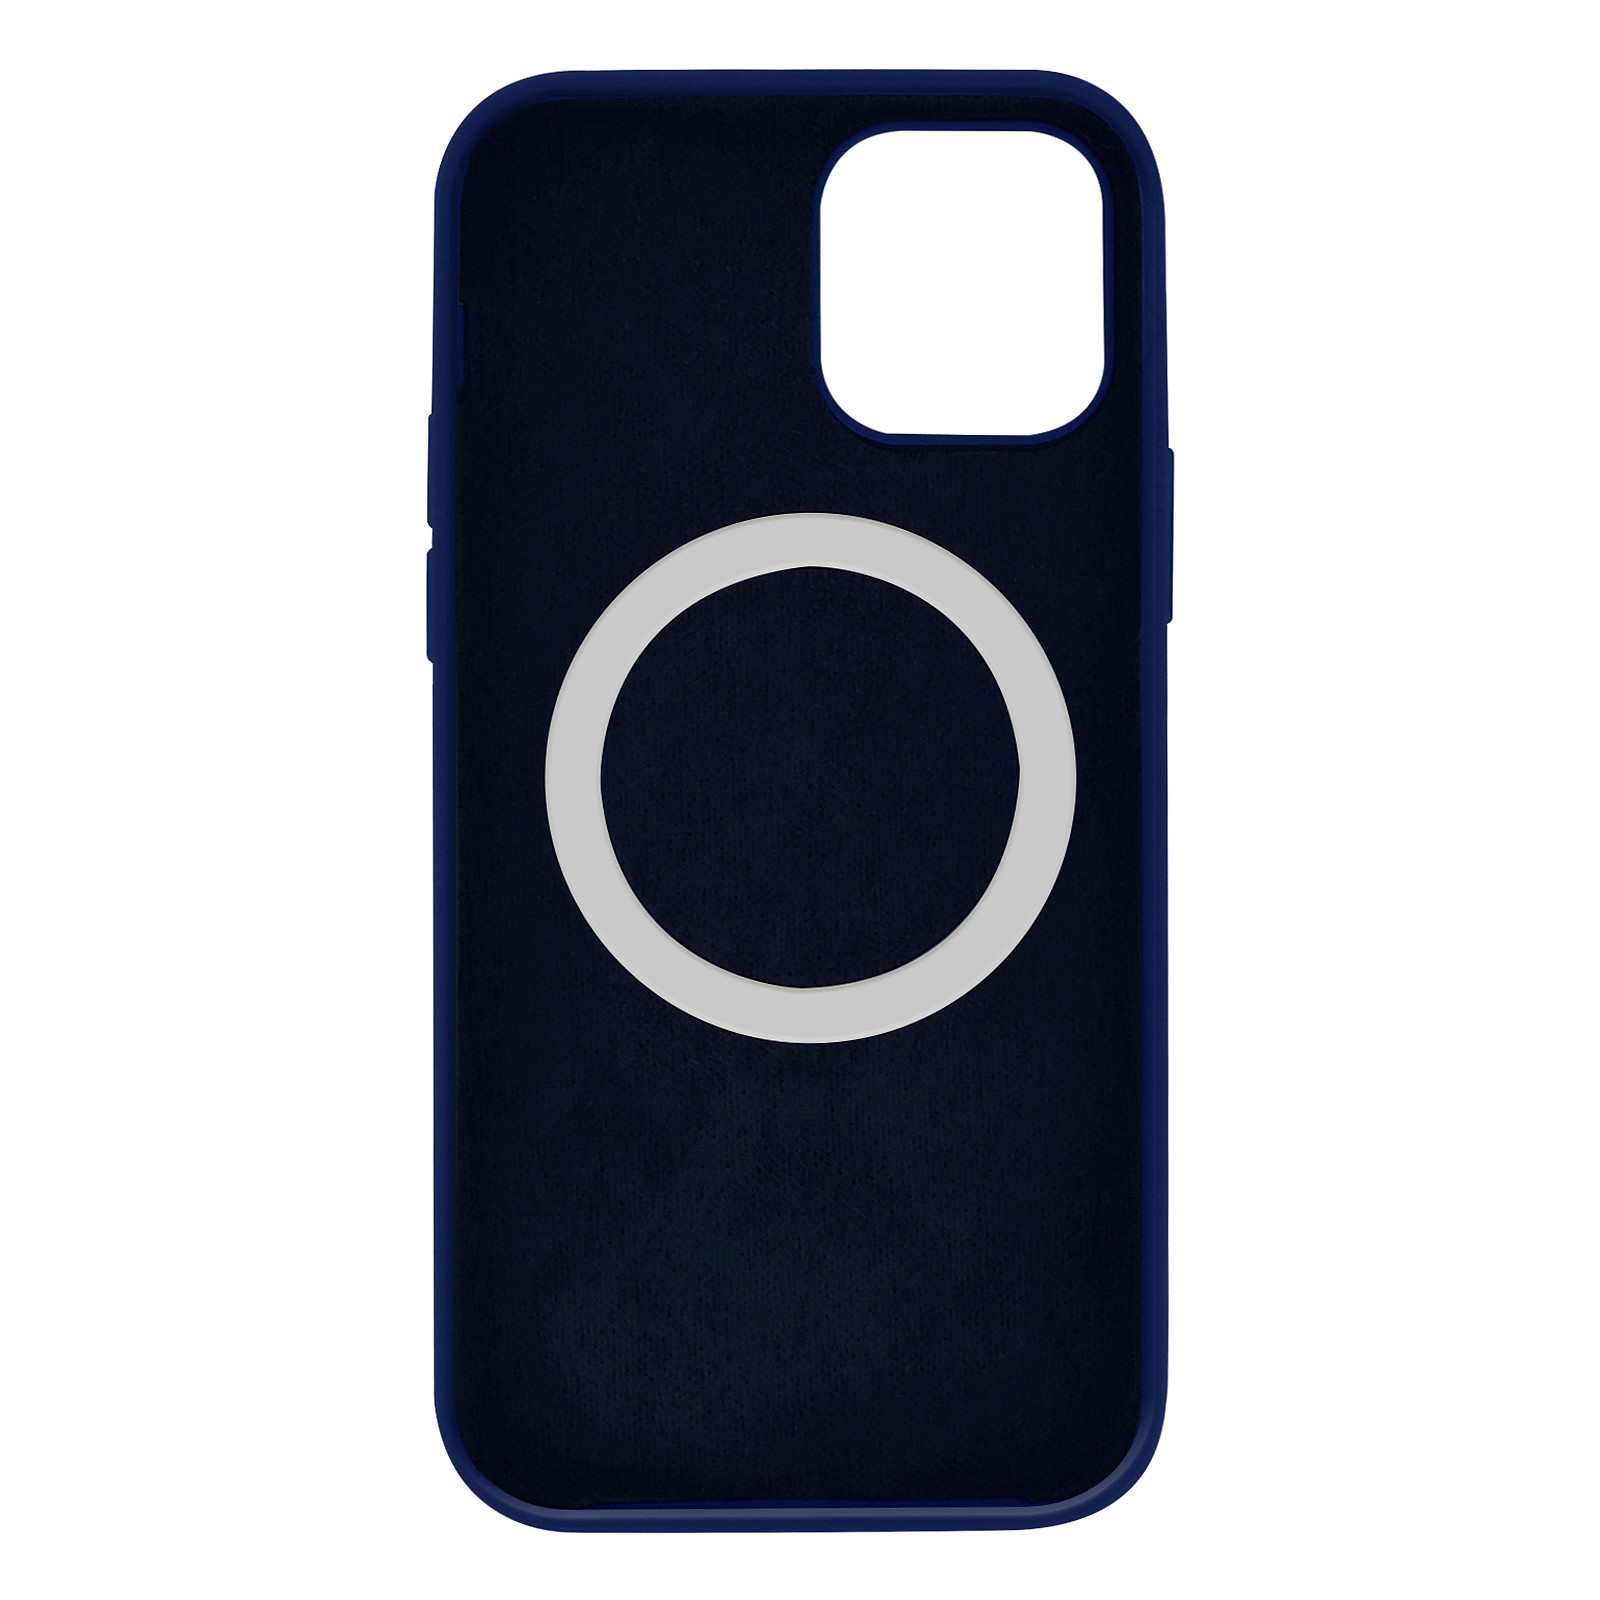 Avizar Coque pour iPhone 12 Mini Magsafe Silicone semi-rigide Anti-traces Bleu - Coque telephone Avizar